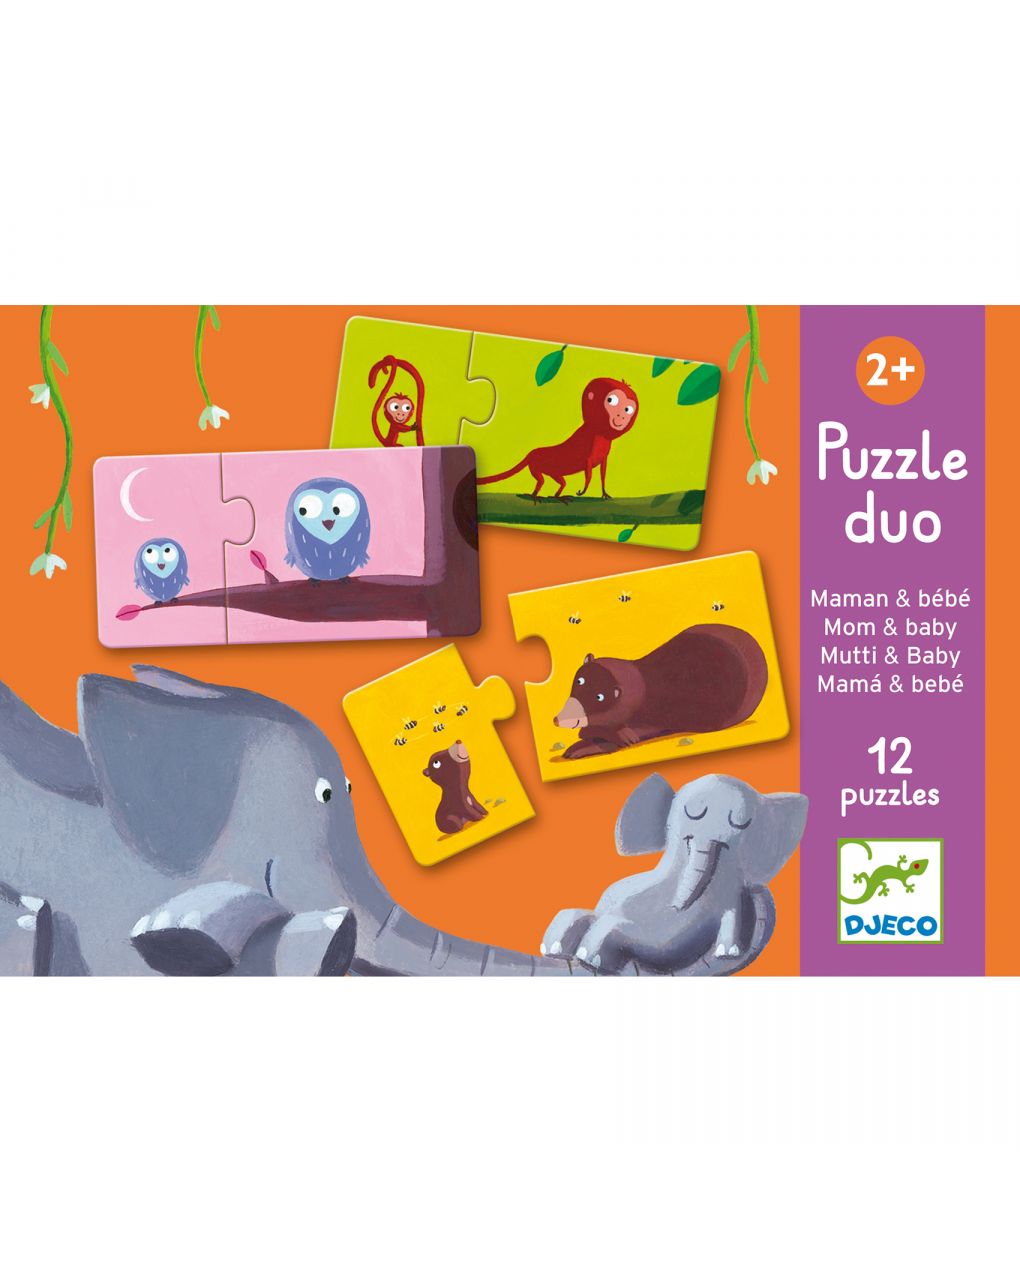 Puzzle duo mamá y bebé 12 puzzles de 2 fichas - djeco - Djeco